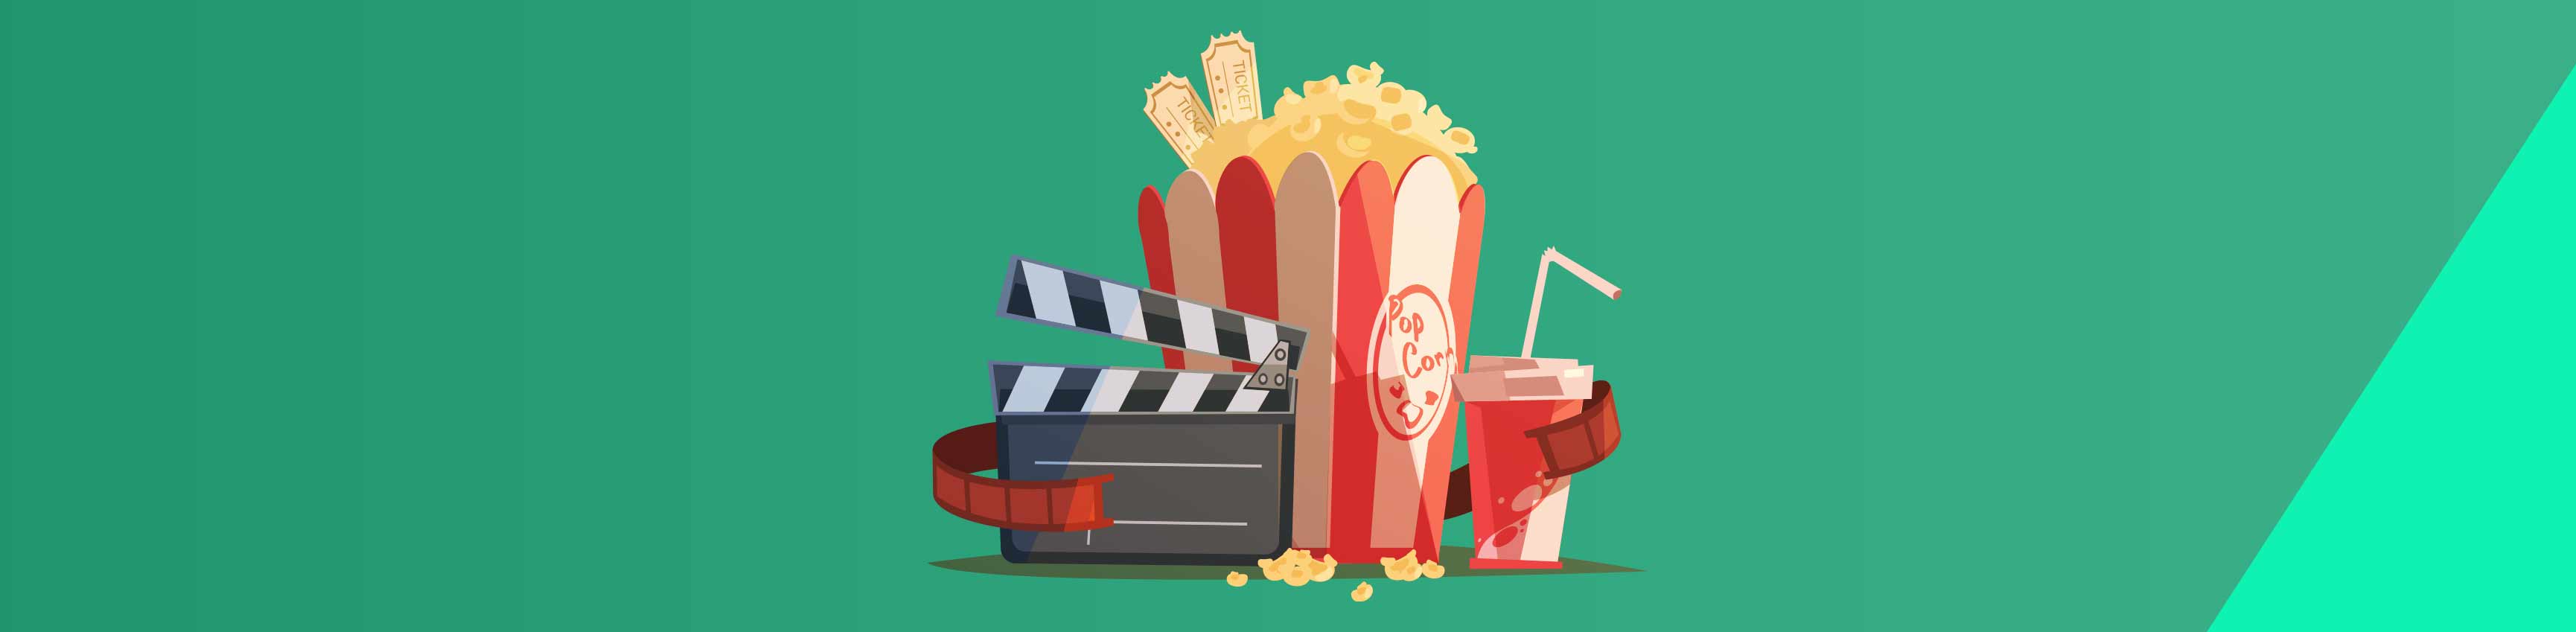 Paquet de popcorn, lunette 3d et ticket de cinéma en illustration pour le cinéma pour les malentendants. 